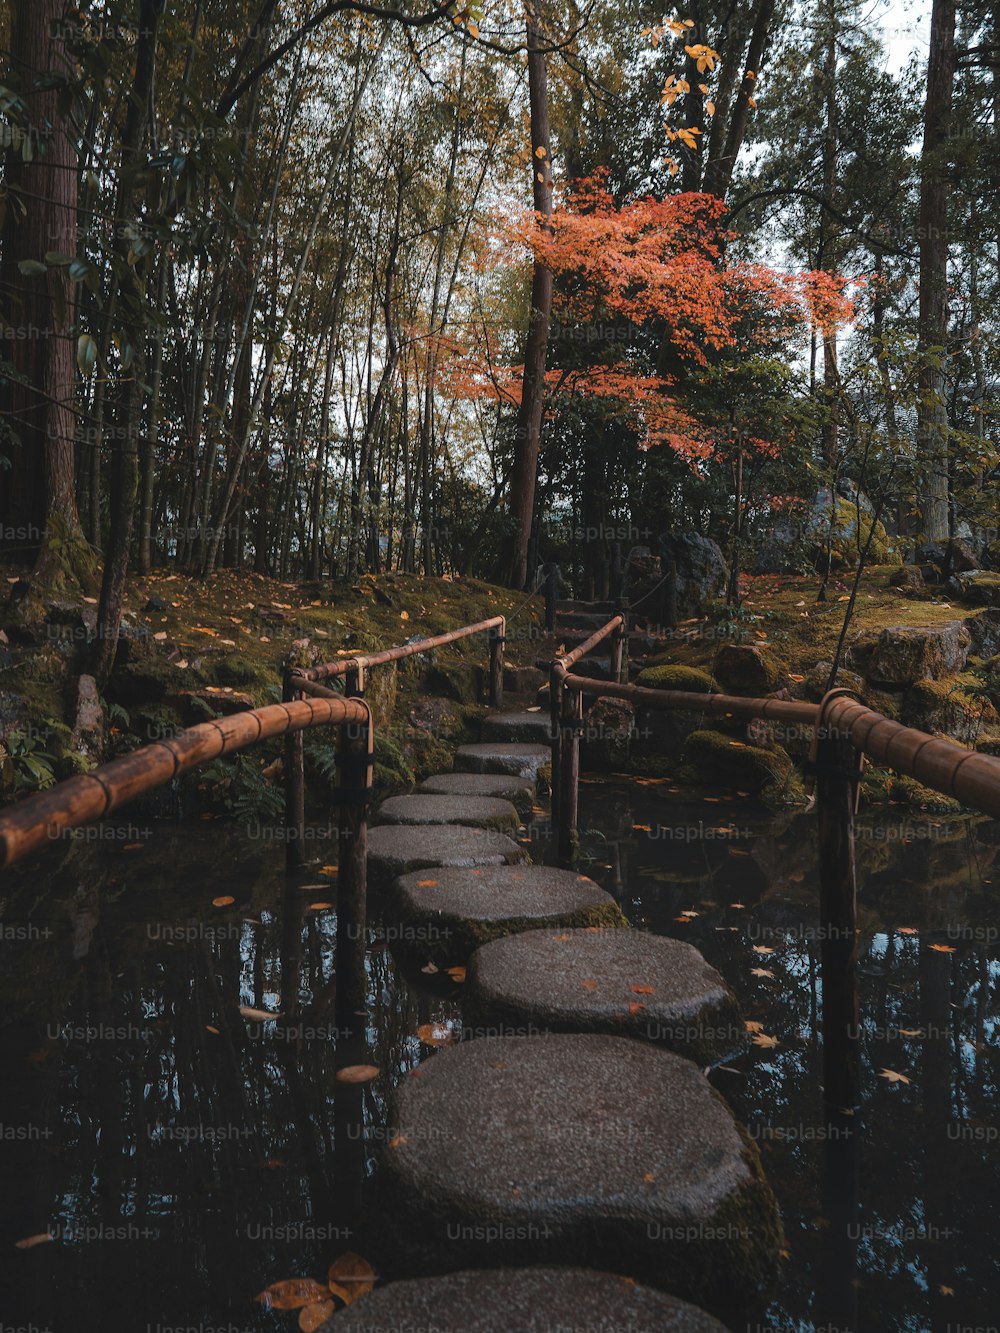 Un camino hecho de peldaños en un bosque